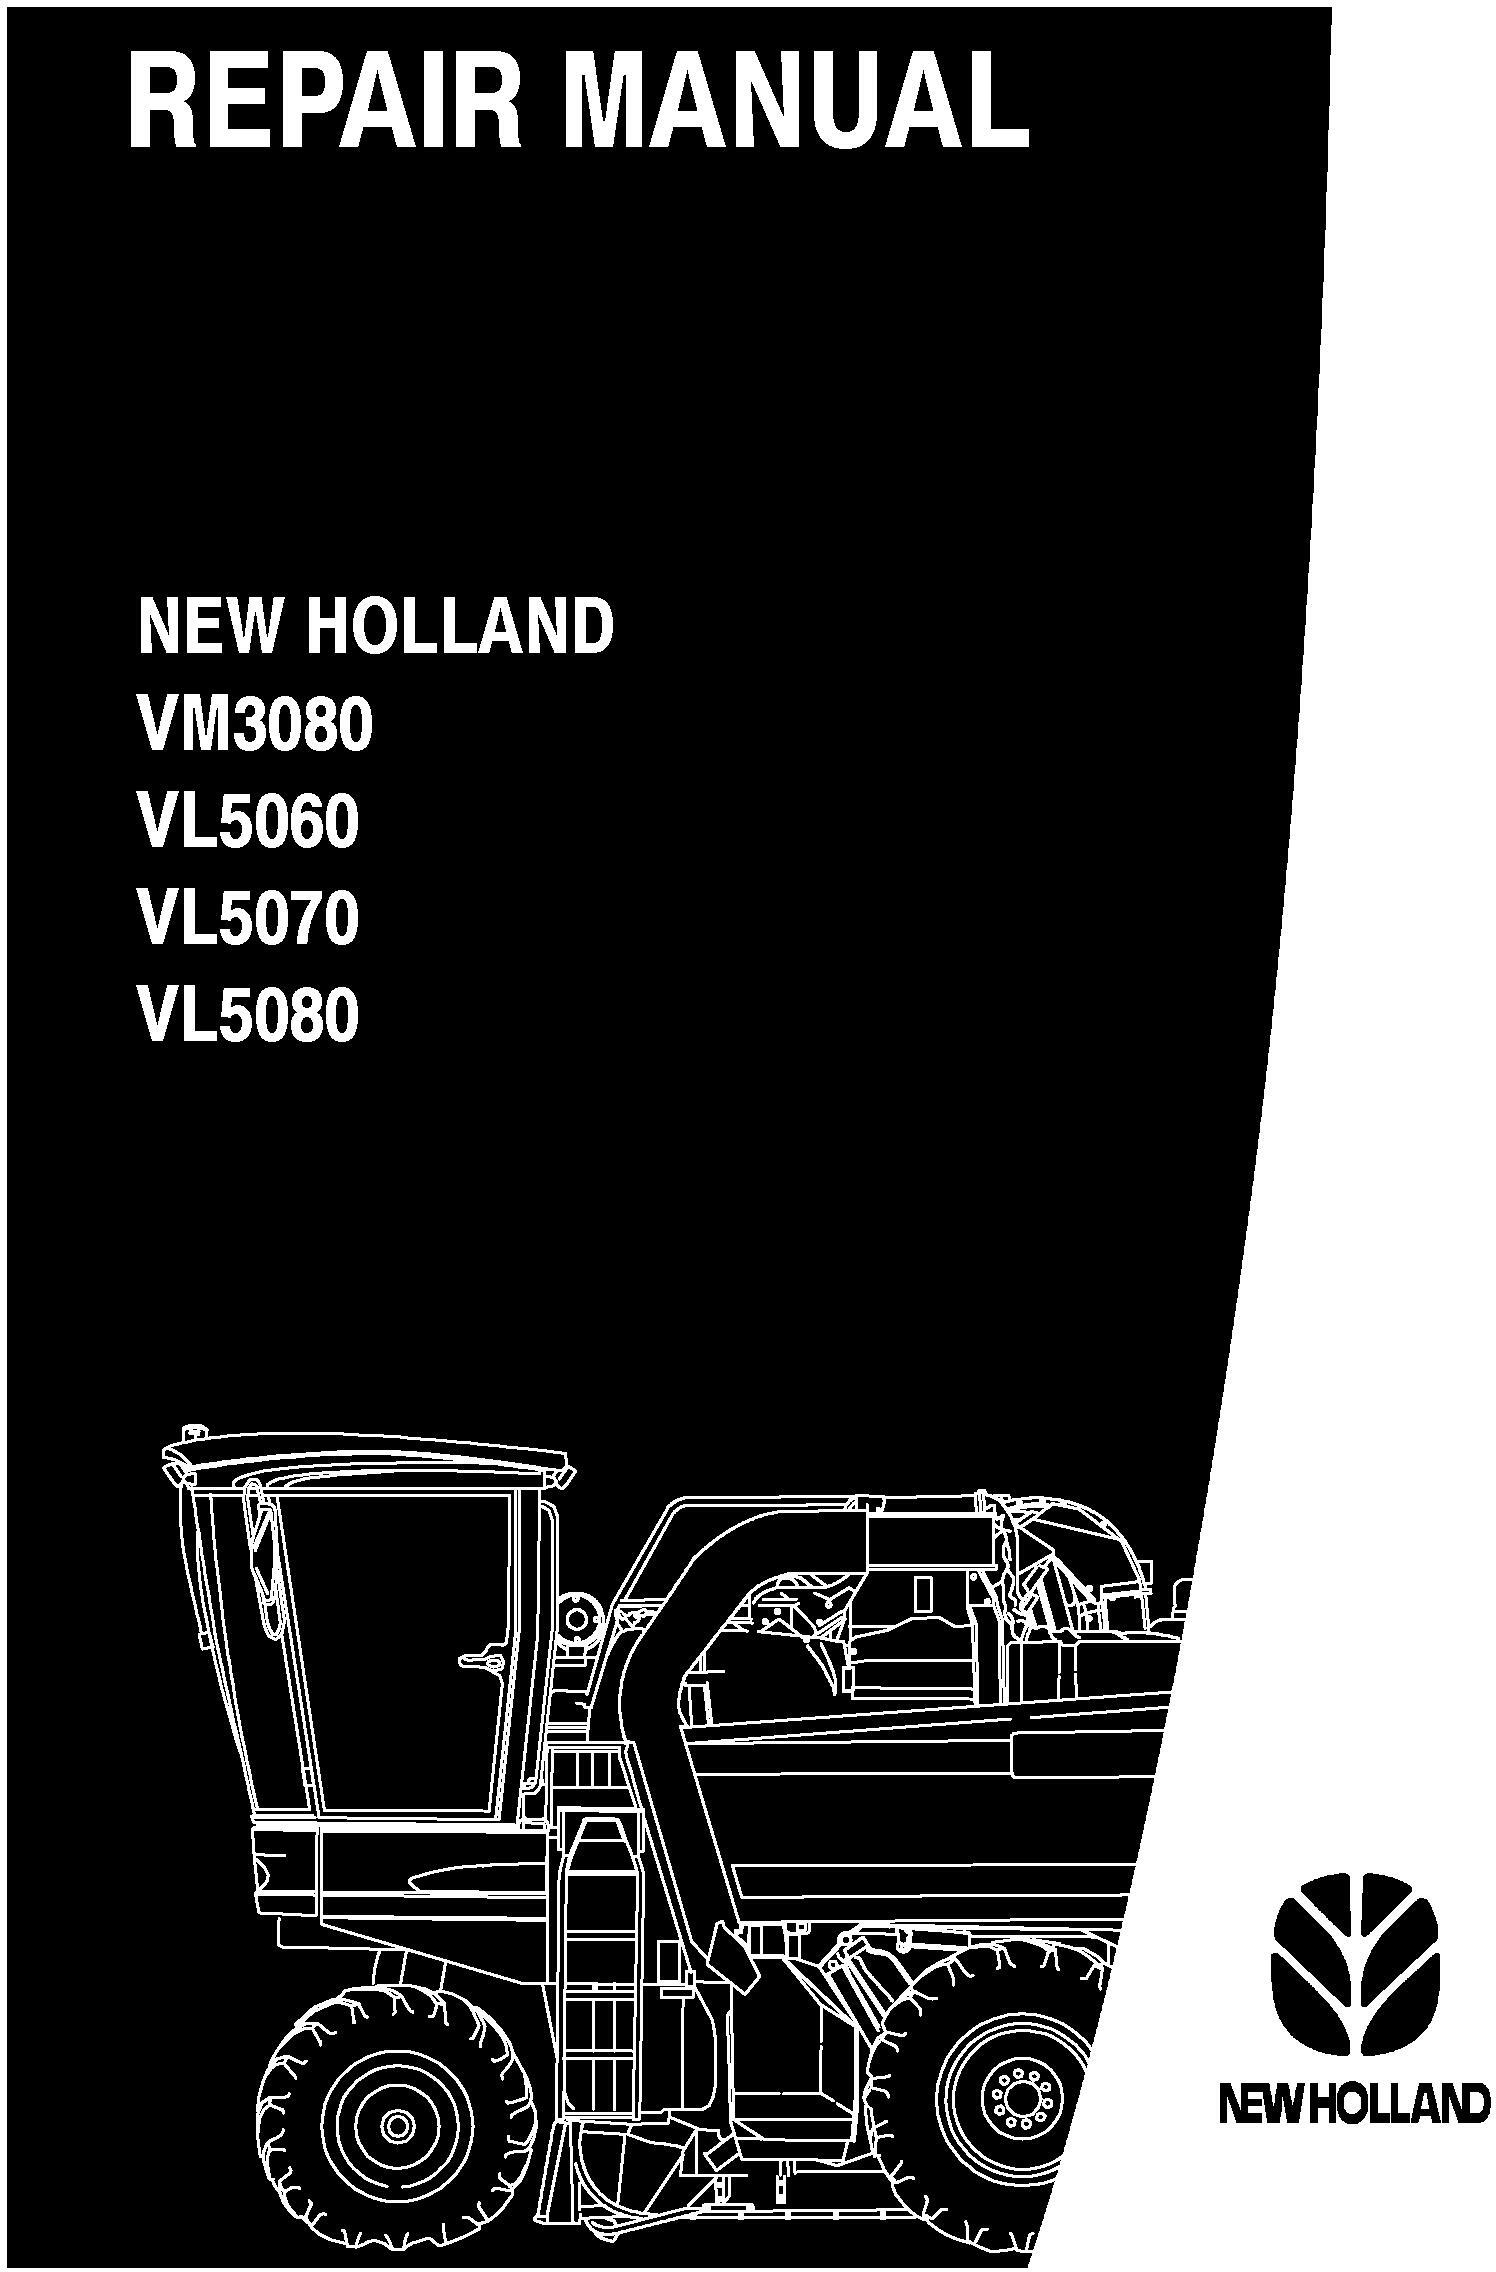 New Holland VL5060, VL5070, VL5080, VM3080 Grape Harvester Service Manual - 20027